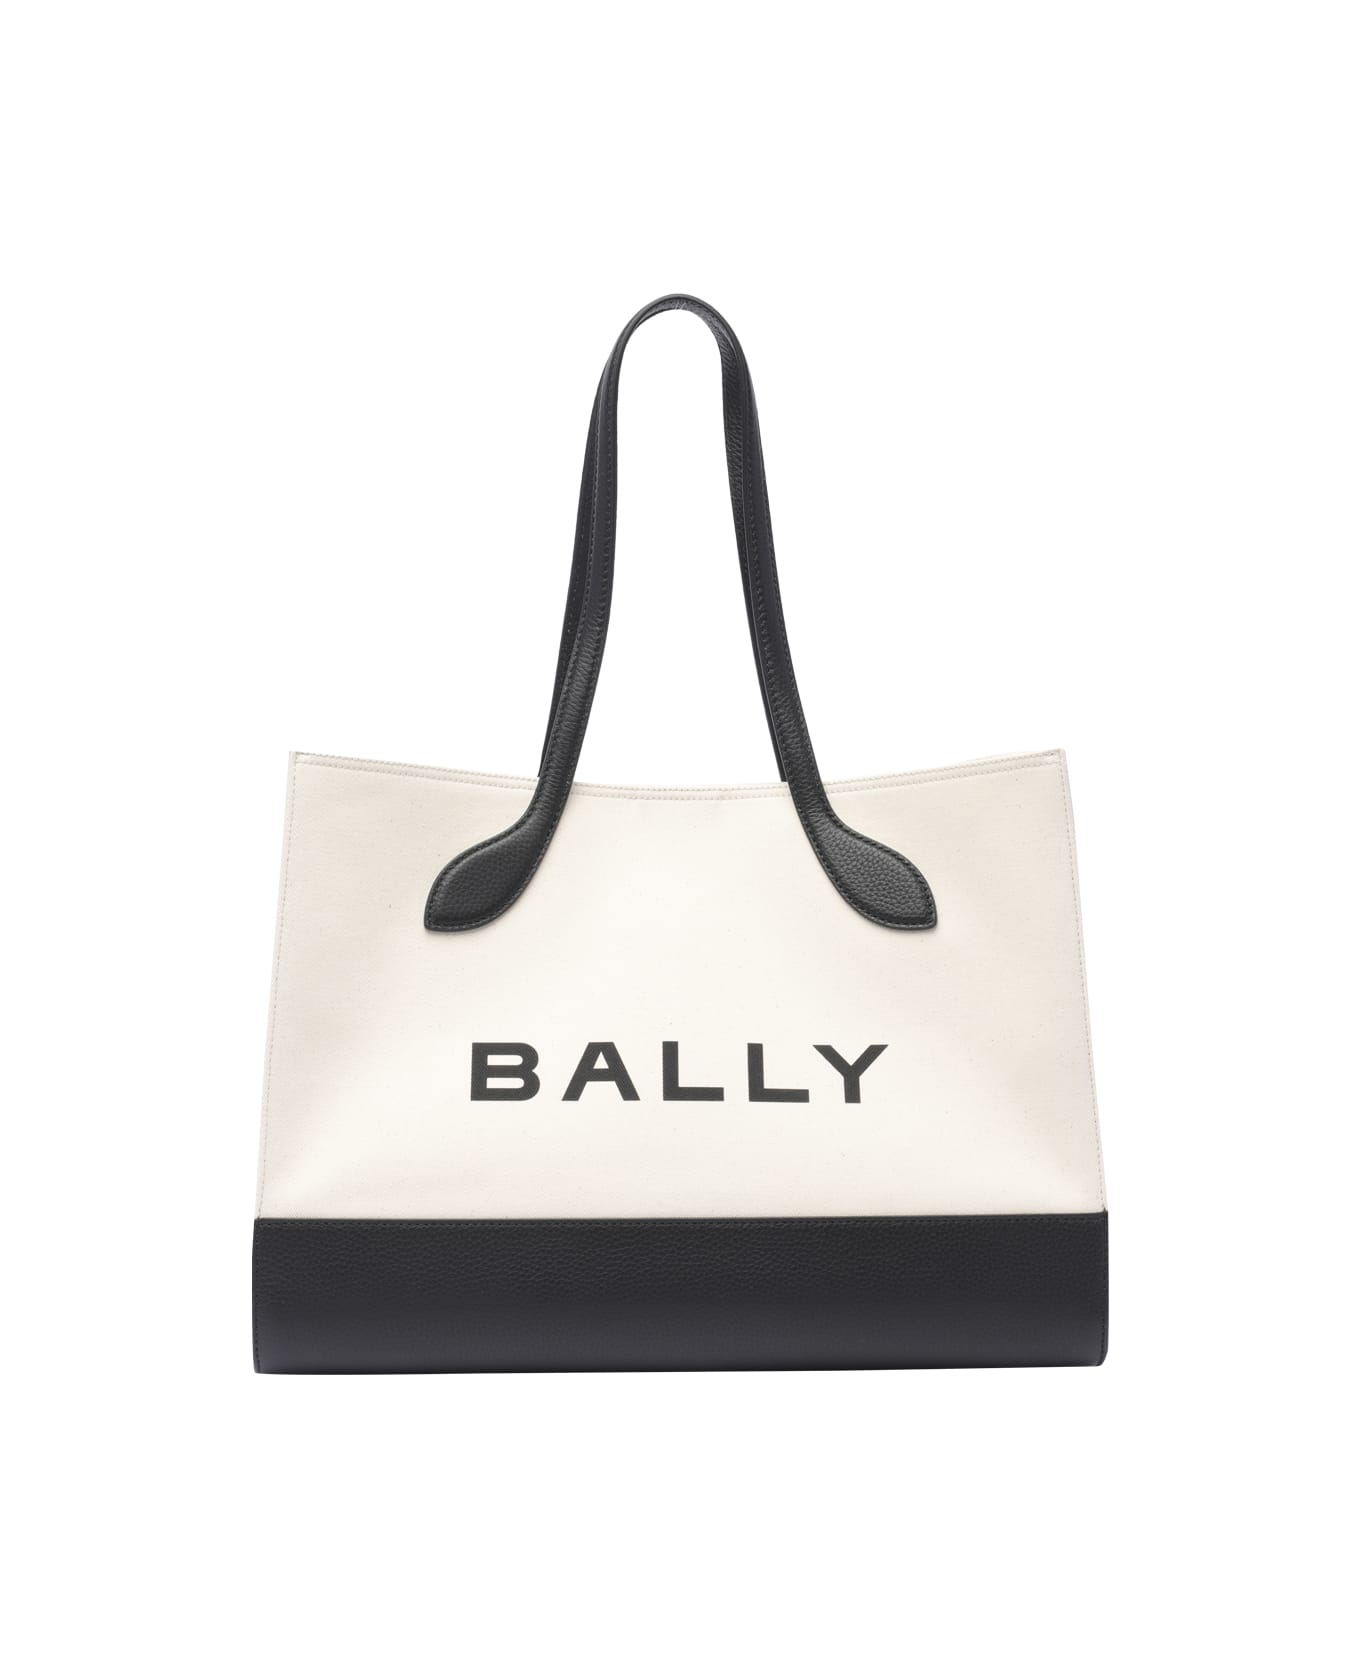 Bally Keep On Tote Bag - Beige